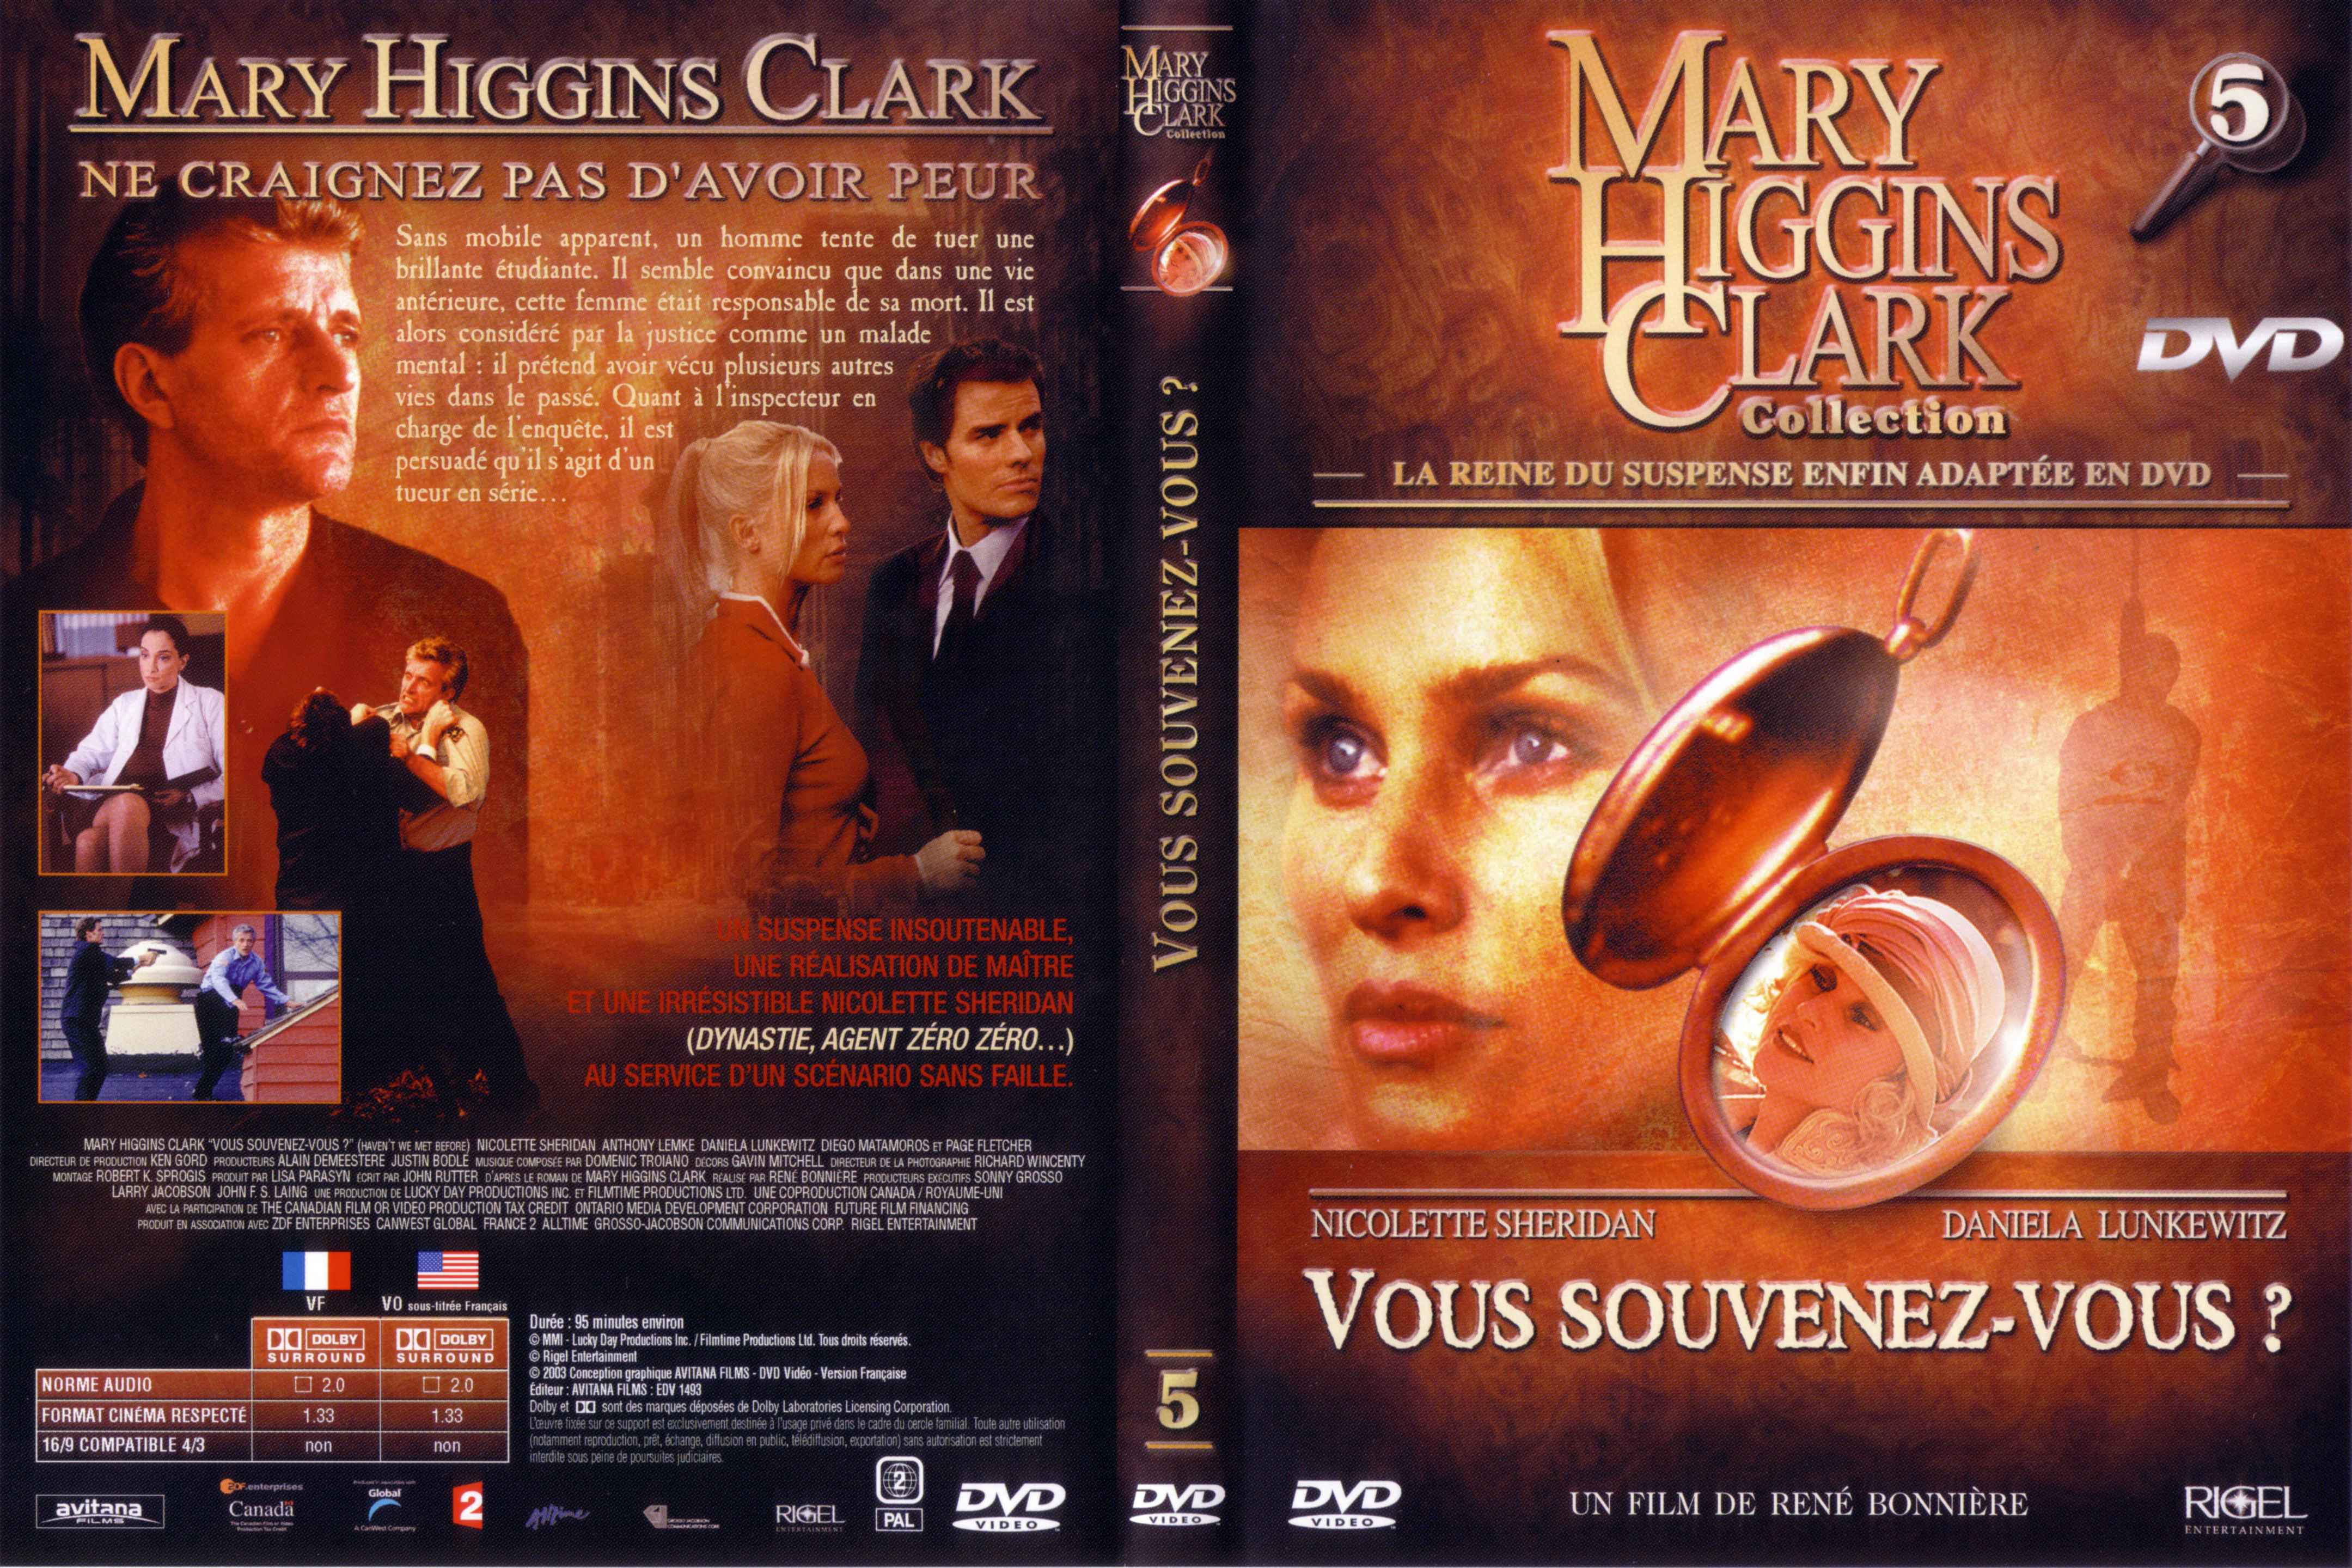 Jaquette DVD de Mary Higgins Clark vol 05 - Vous souvenez vous - Cinéma Passion